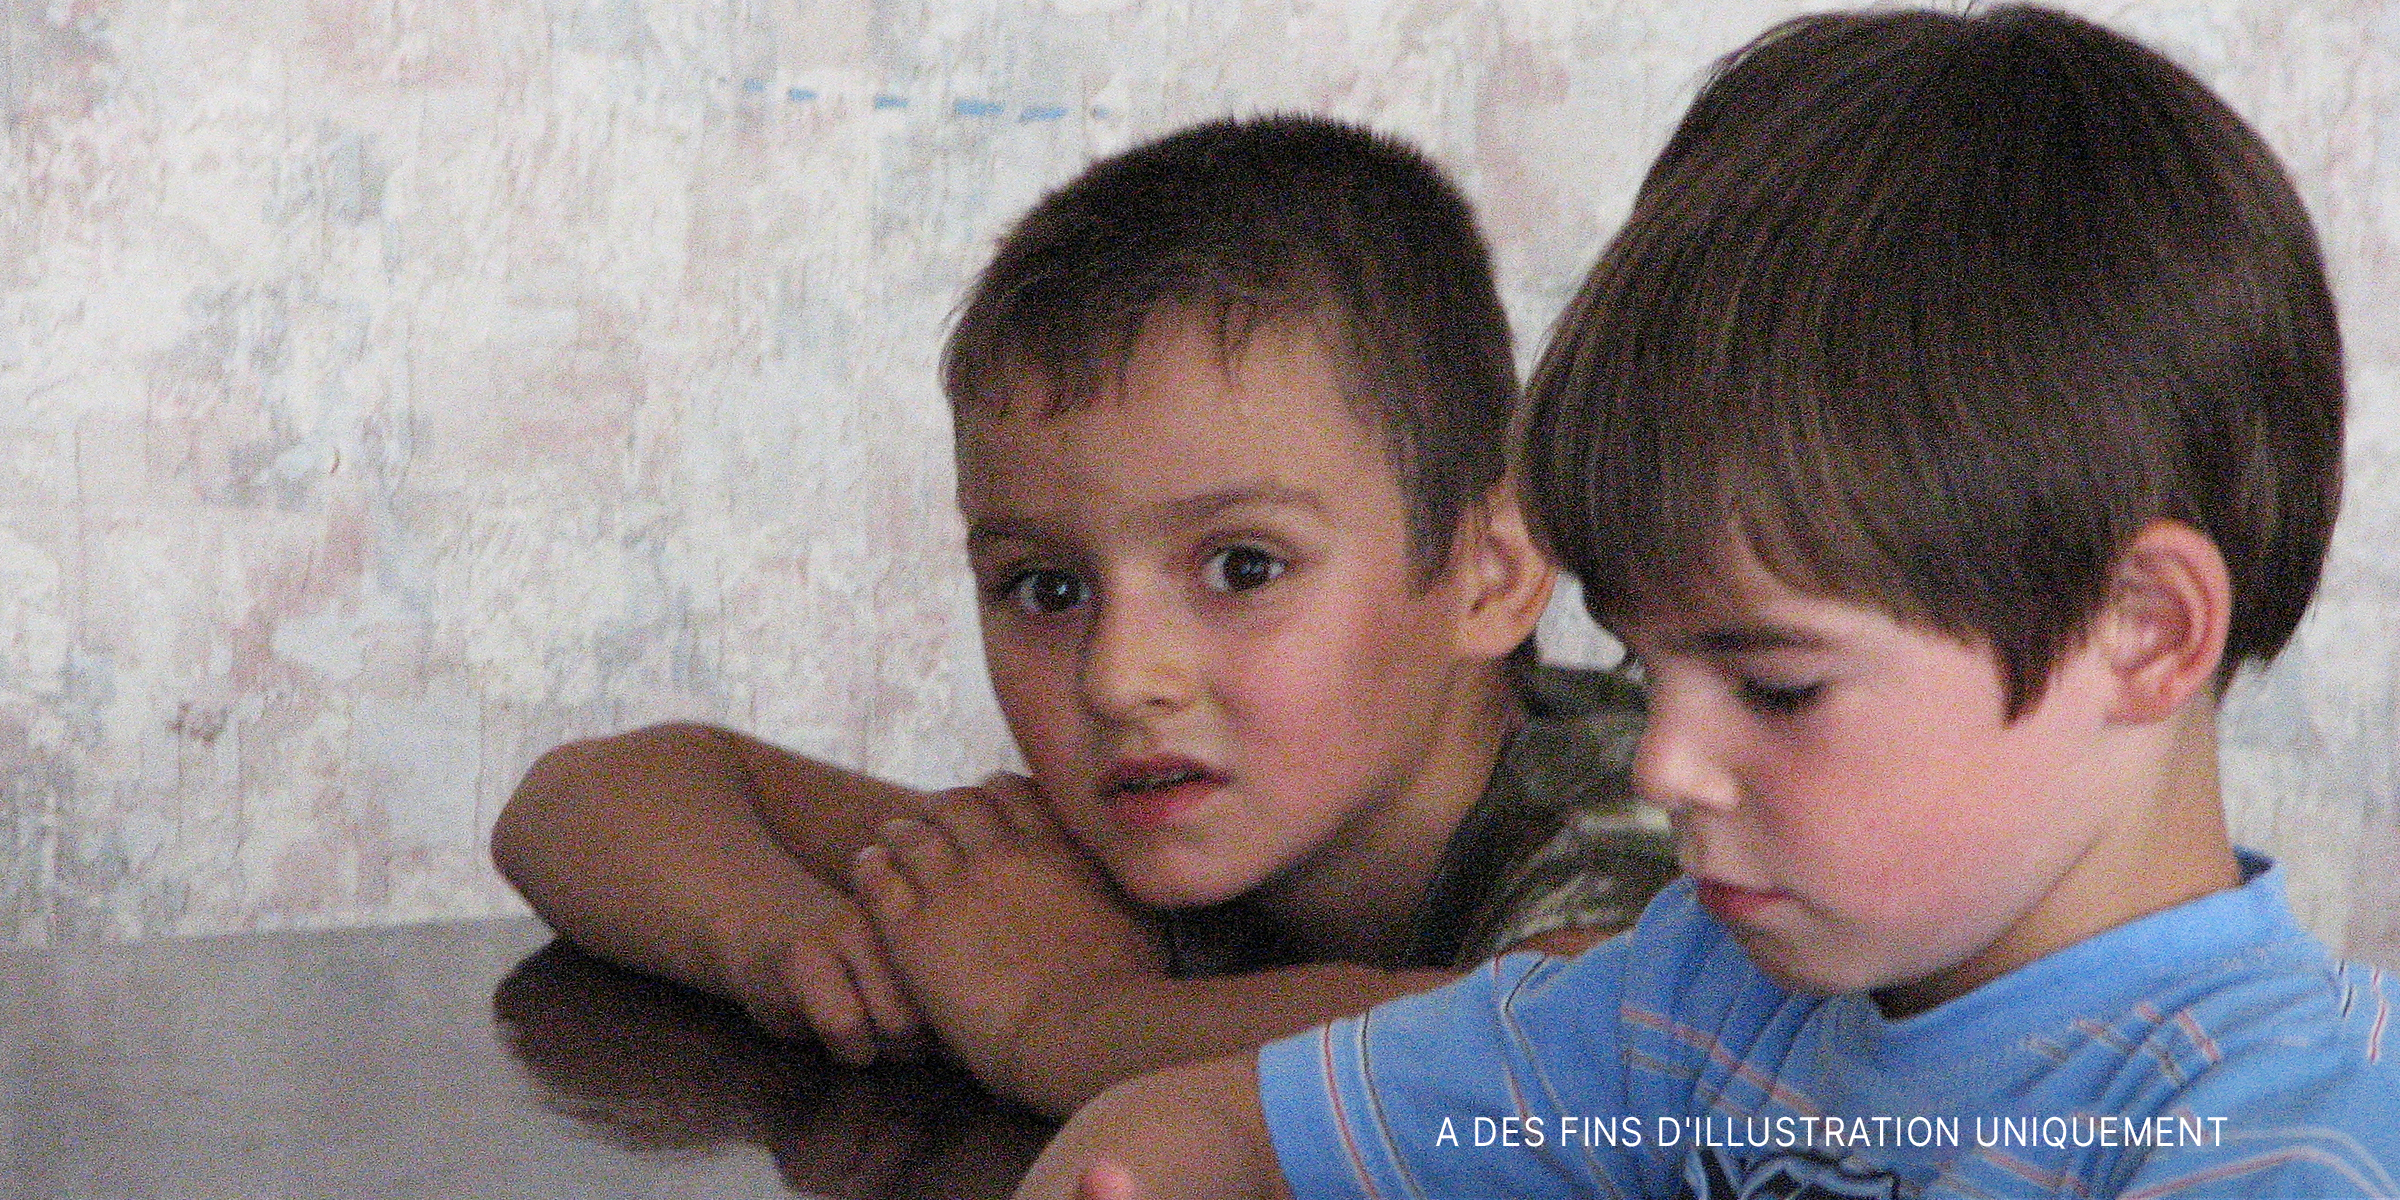 Deux petits garçons à l'air contrarié | Source : flickr/ (CC BY 2.0) by saritarobinson